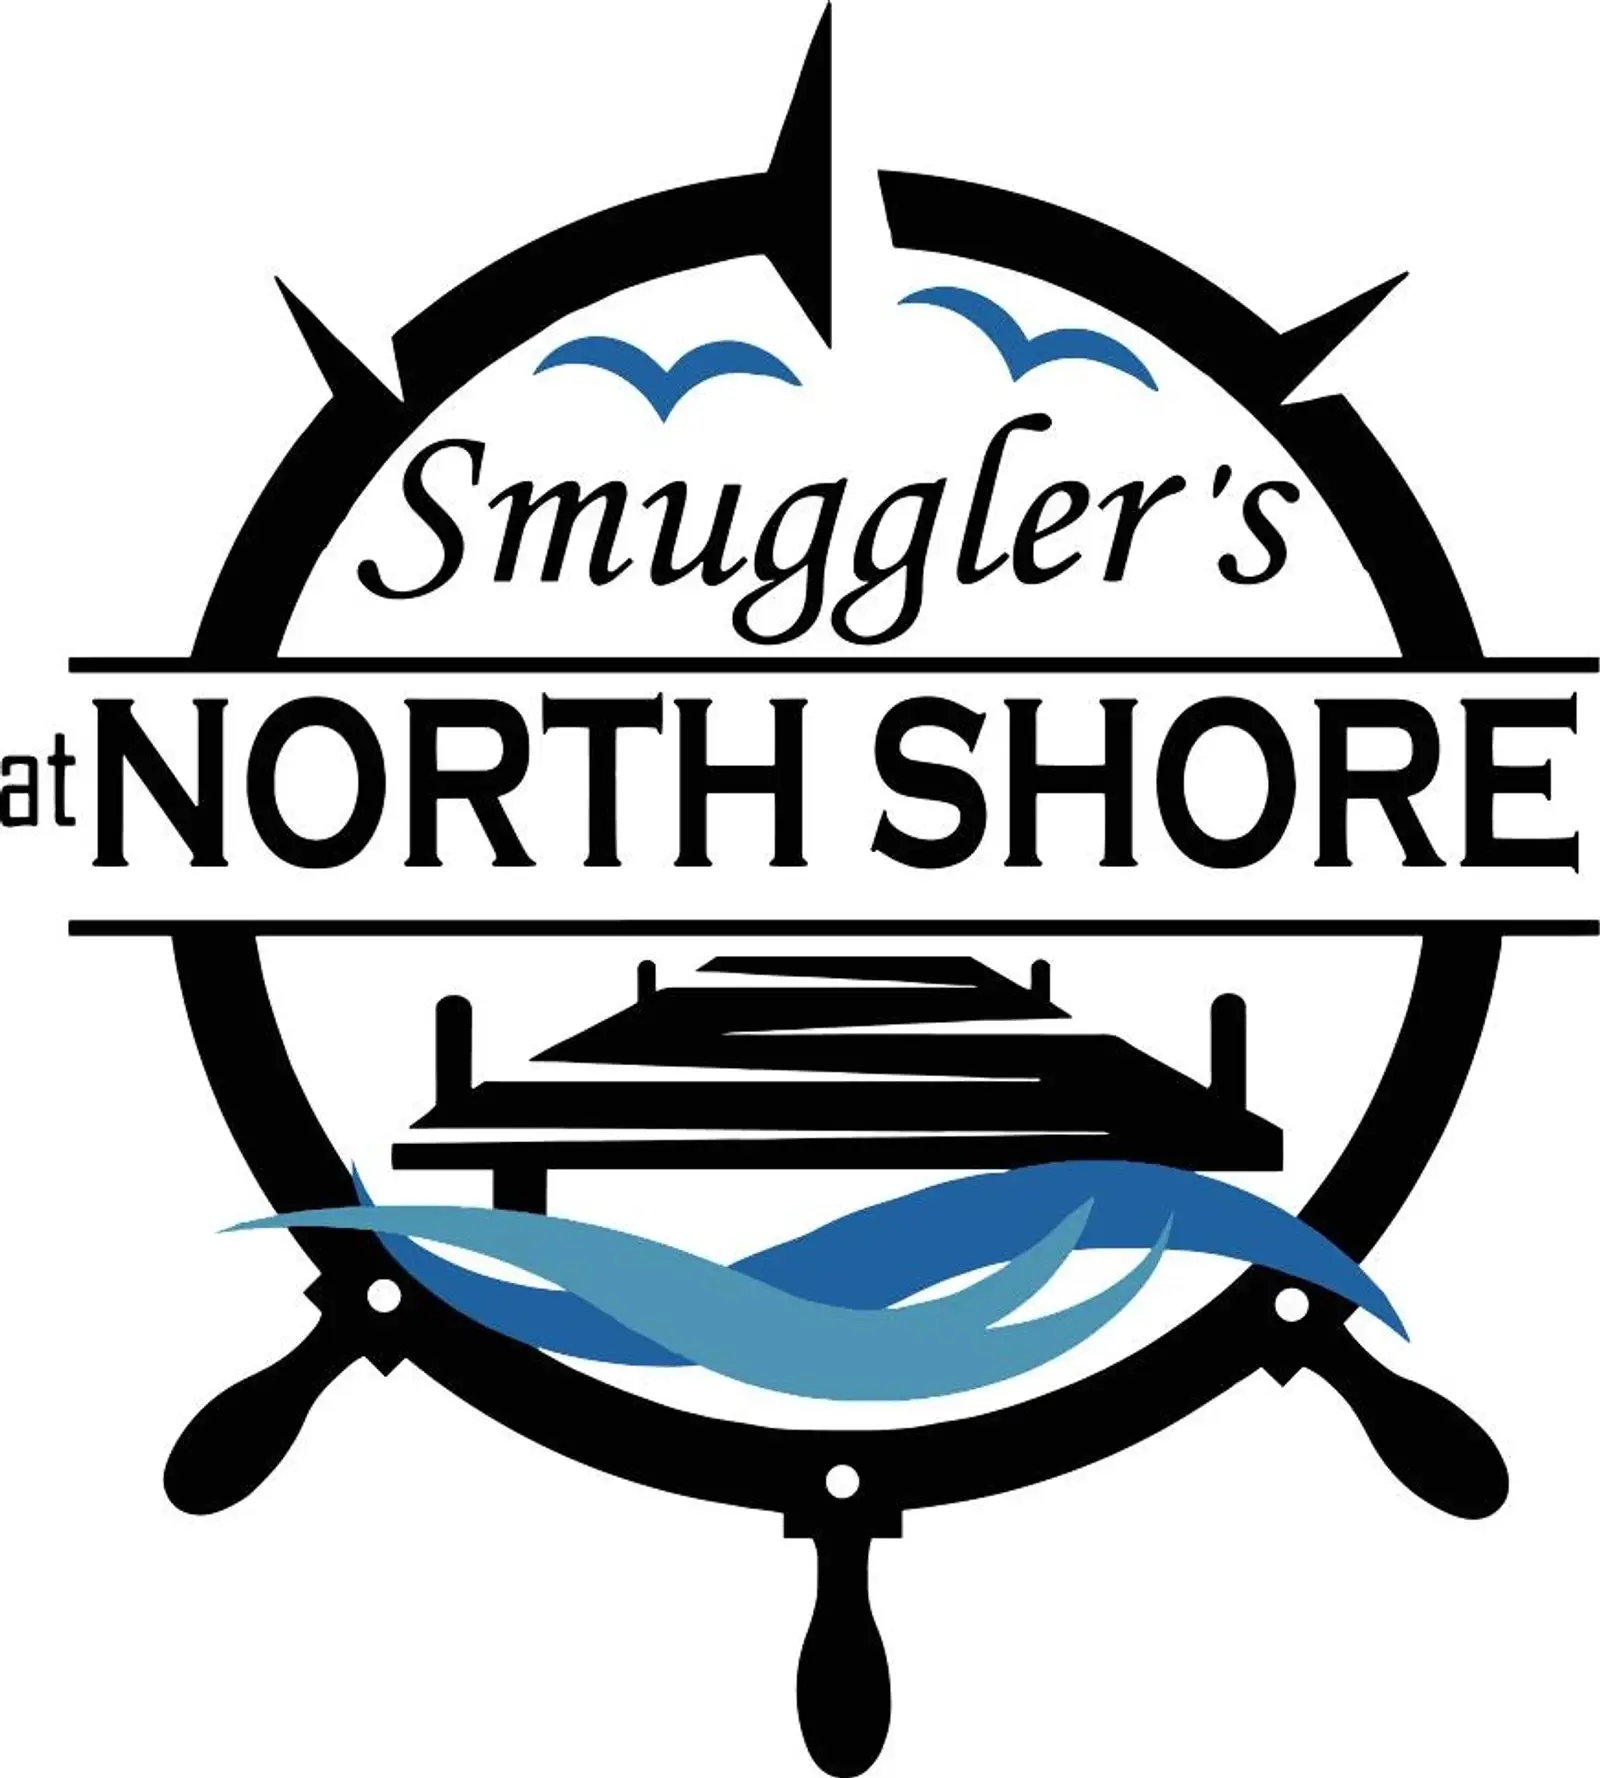 Smuggler's At North Shore  logo